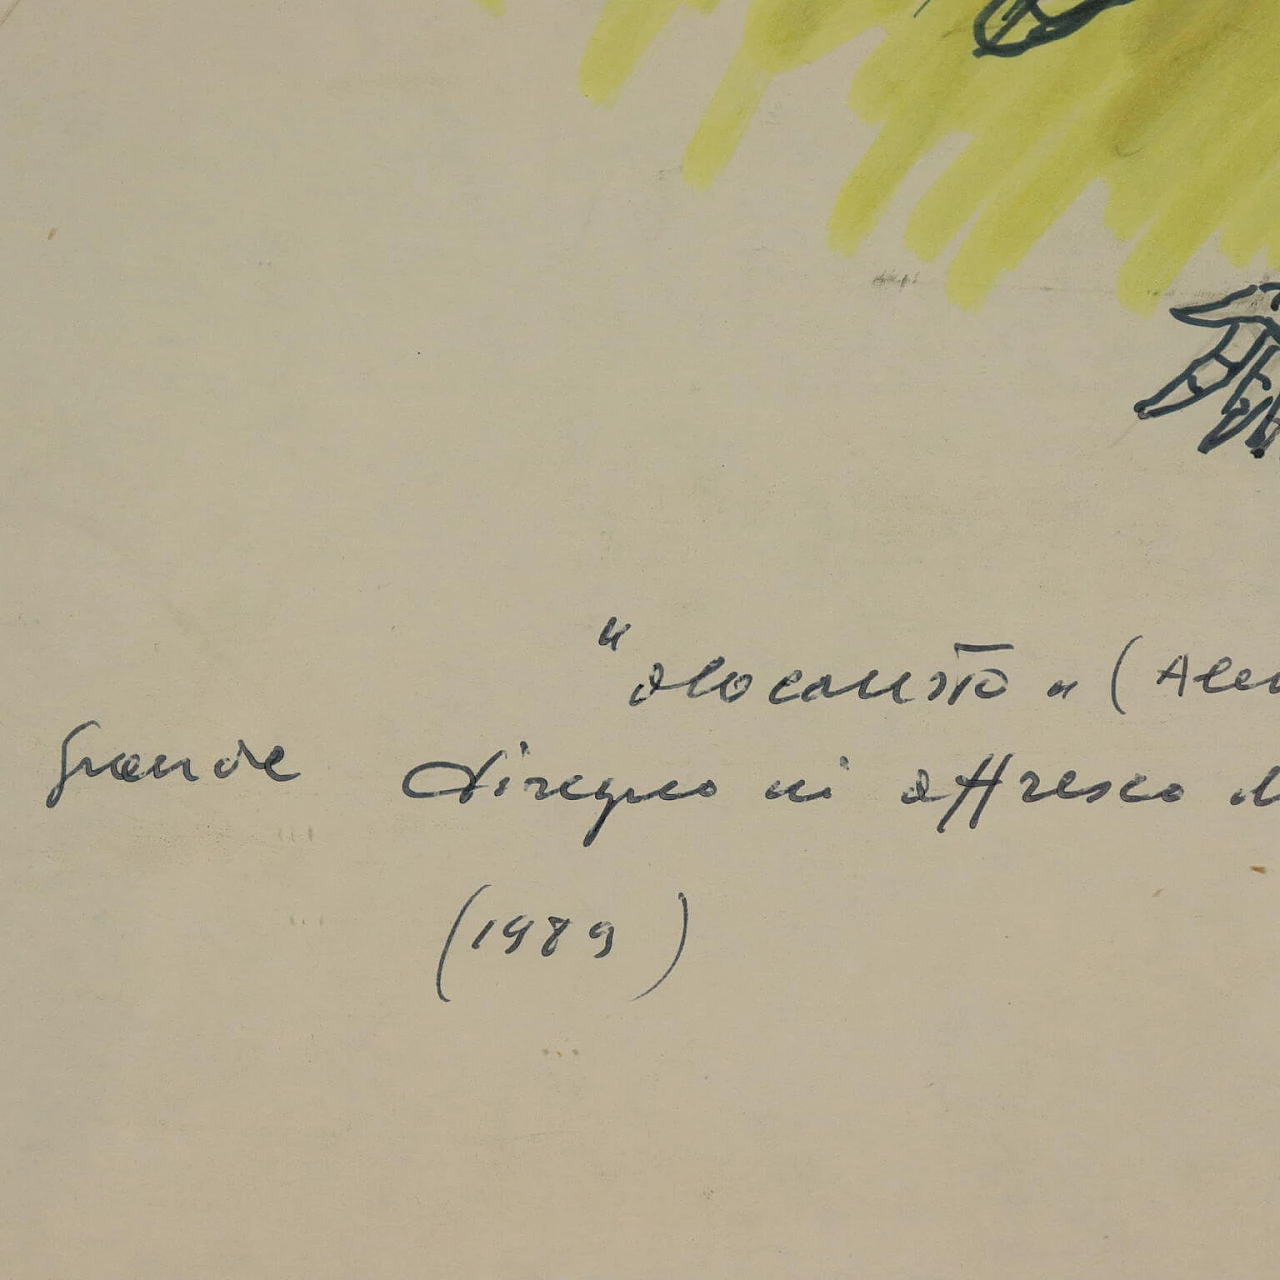 Remo Brindisi, Olocausto, disegno a tecnica mista su carta, 1989 7